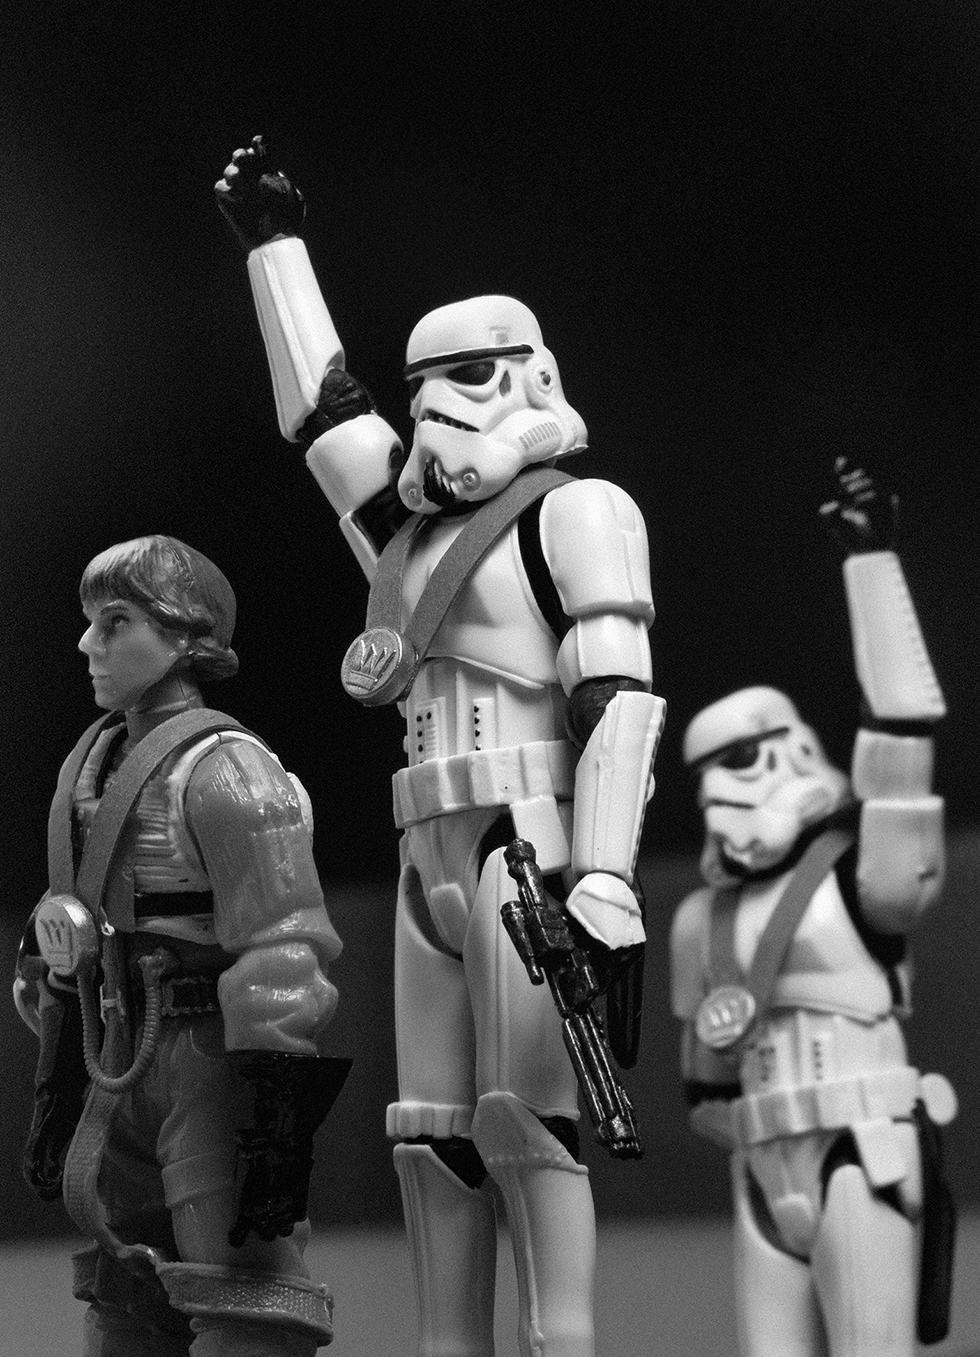 The Empire Strikes Back © David Eger, www.lumas.com